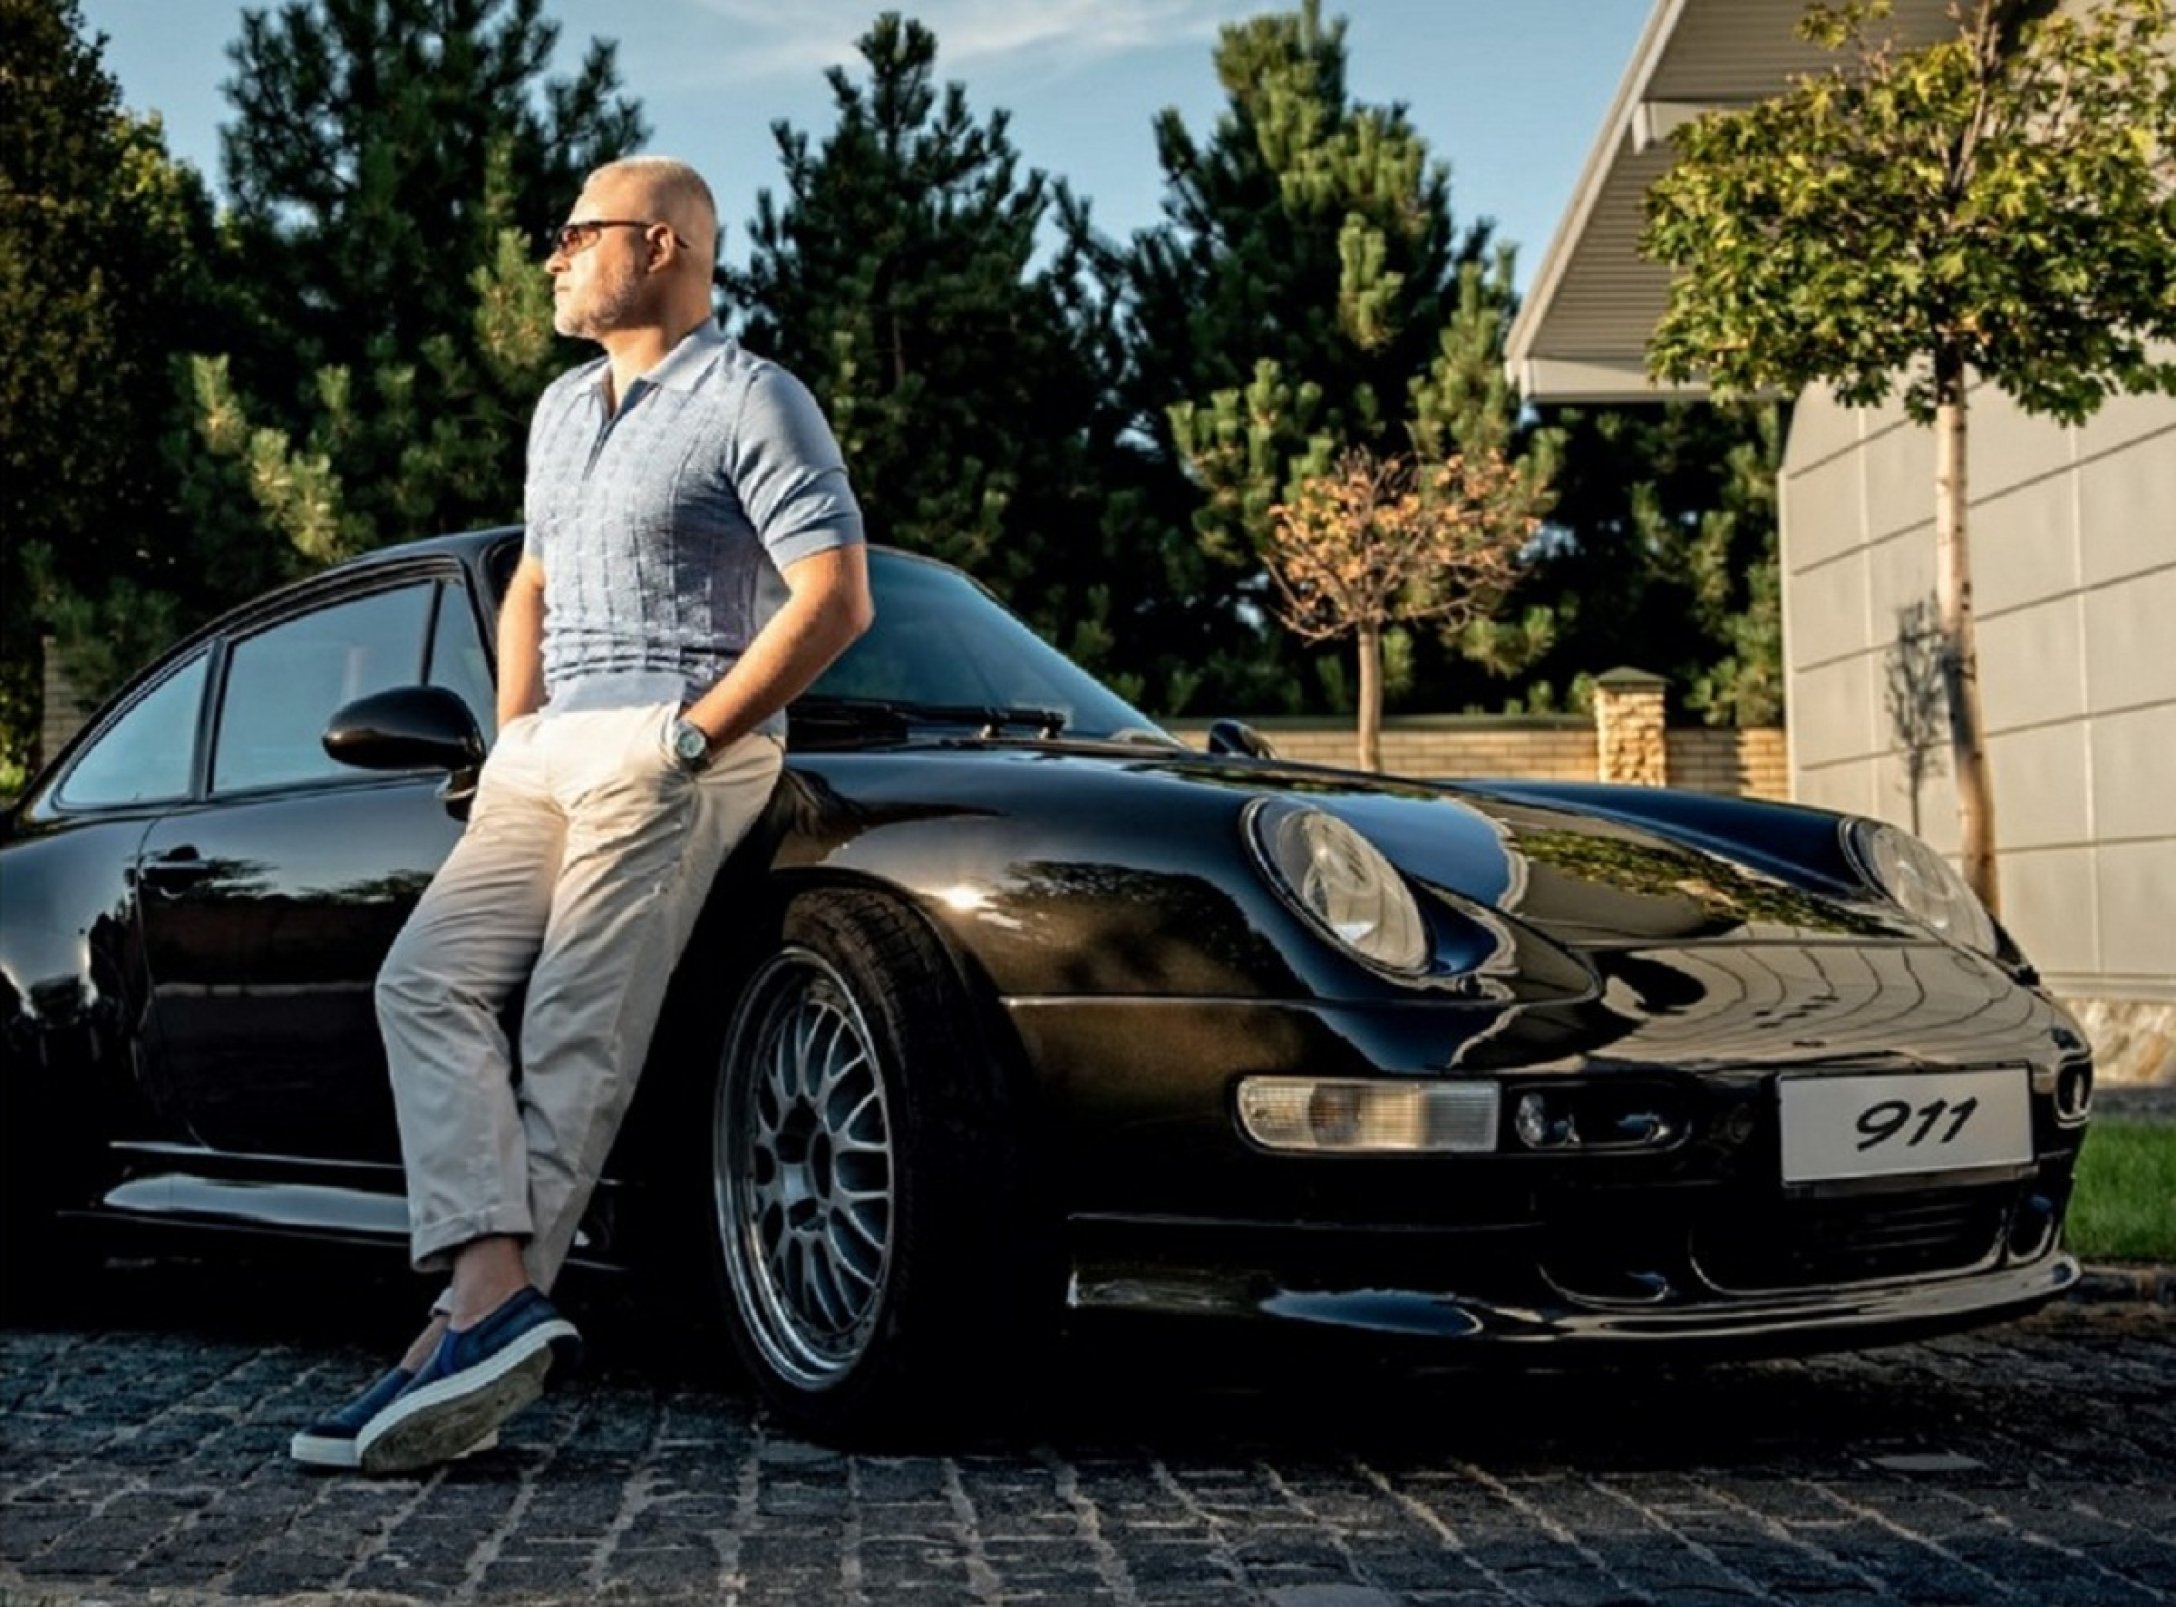 В коллекции бизнесмена преимущественно автомобили версии 911 - || фото: focus.ua